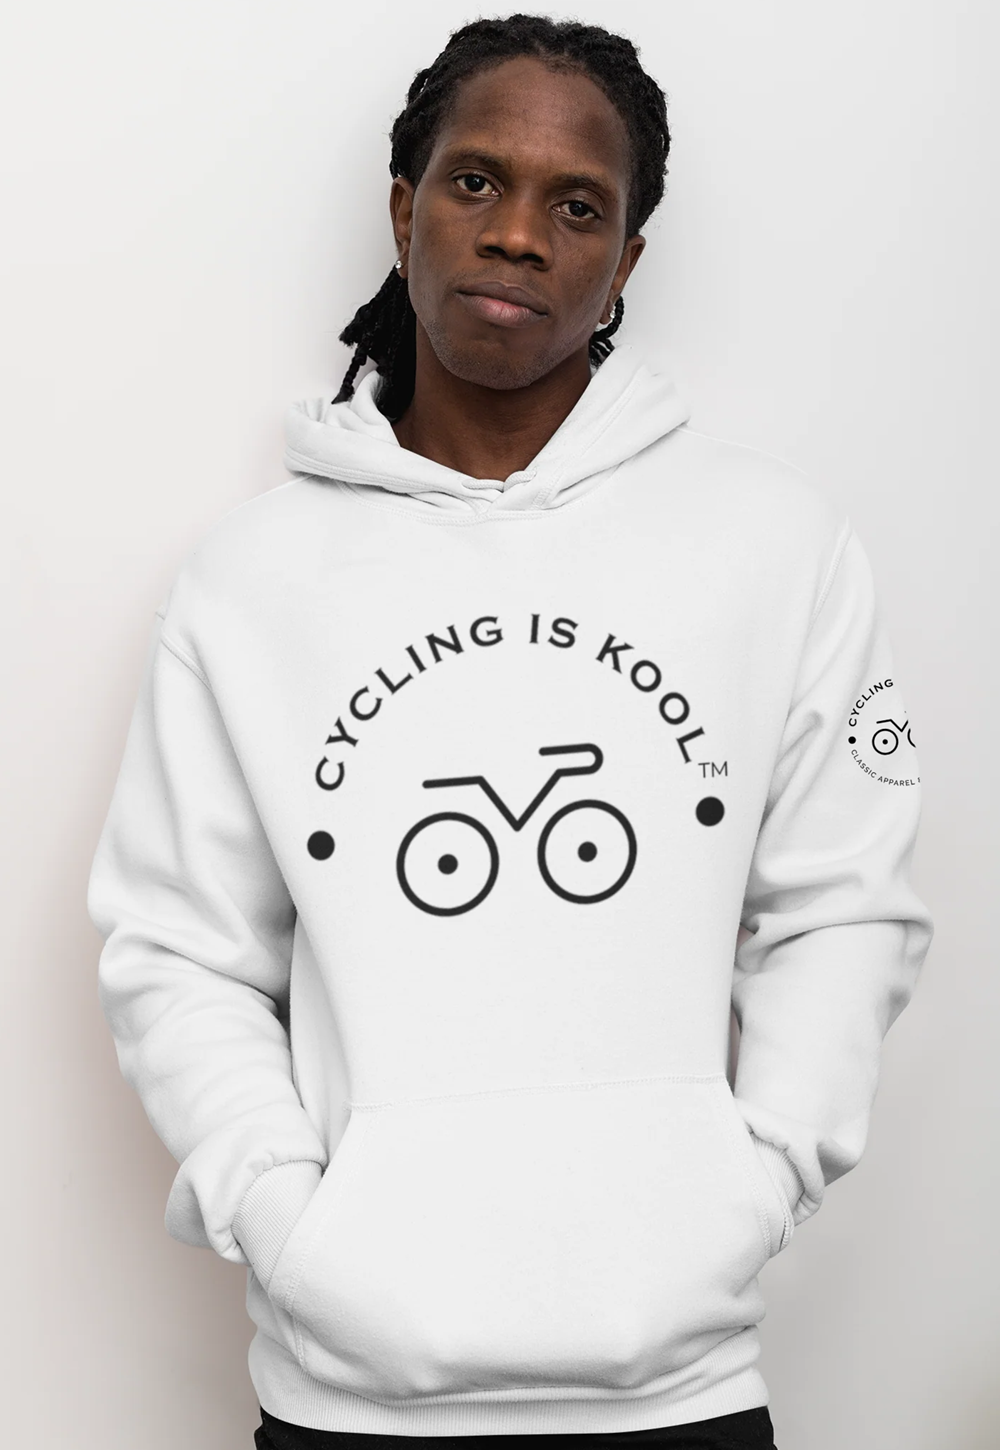 Cycling is Kool- Hoodie White